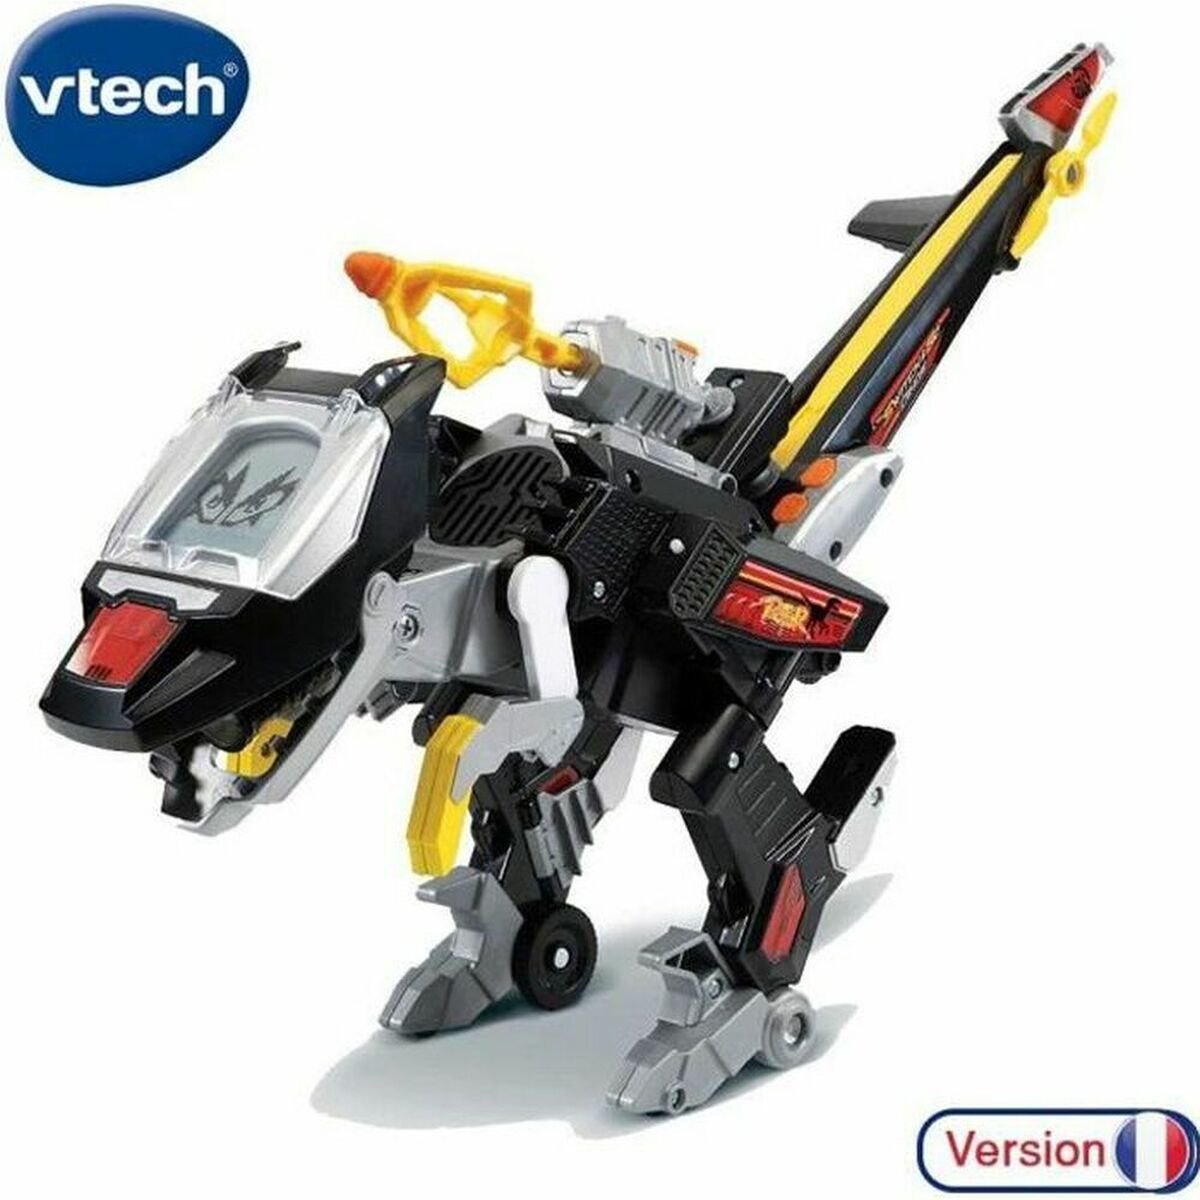 Interaktiver Roboter Vtech 80-141465